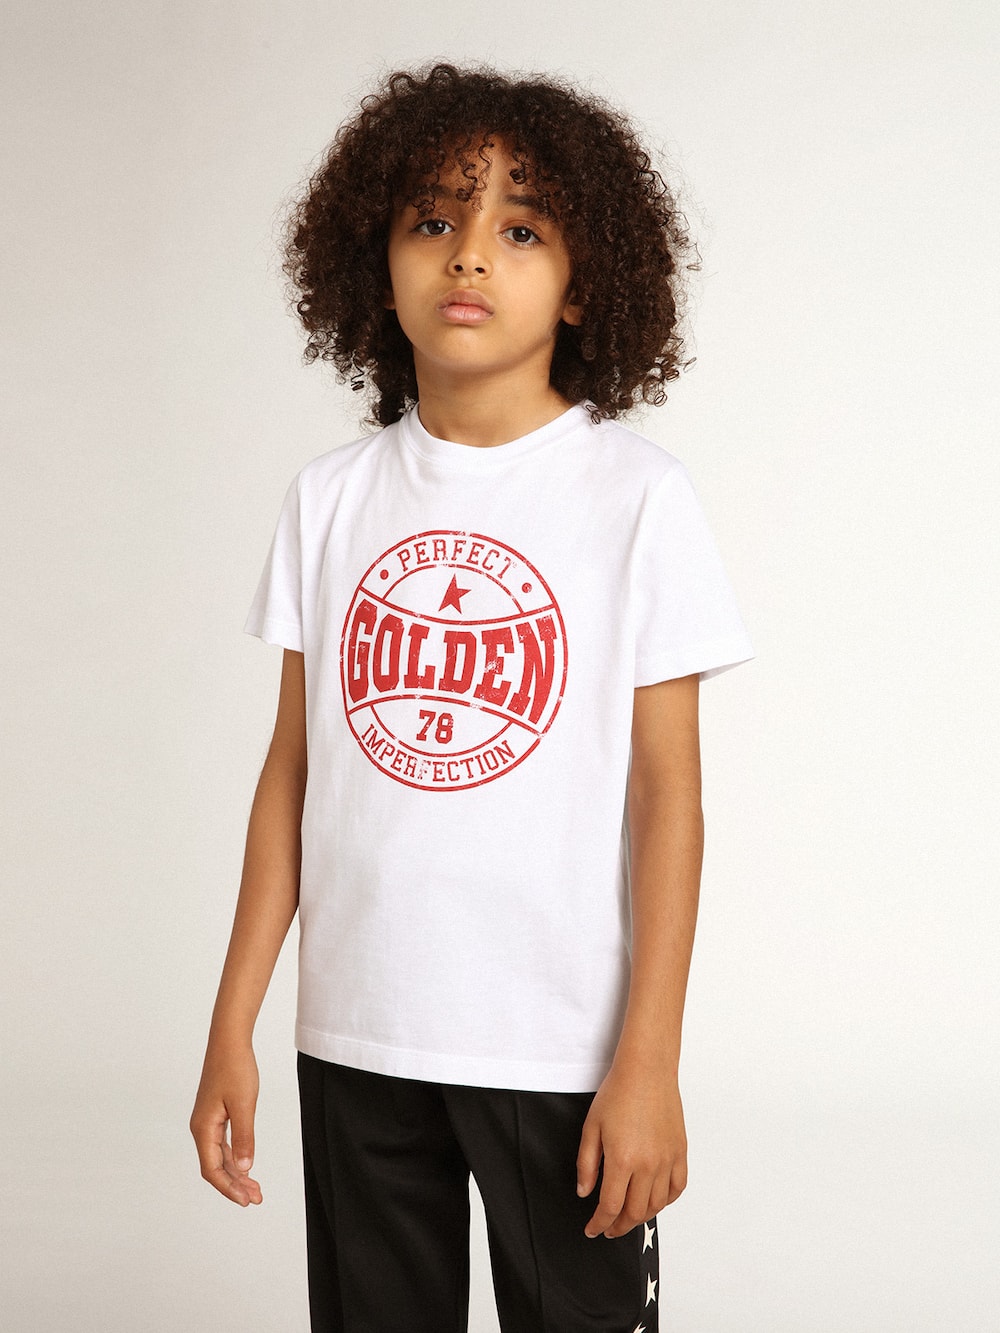 Golden Goose - Camiseta branca infantil masculina com logo vermelho no centro in 